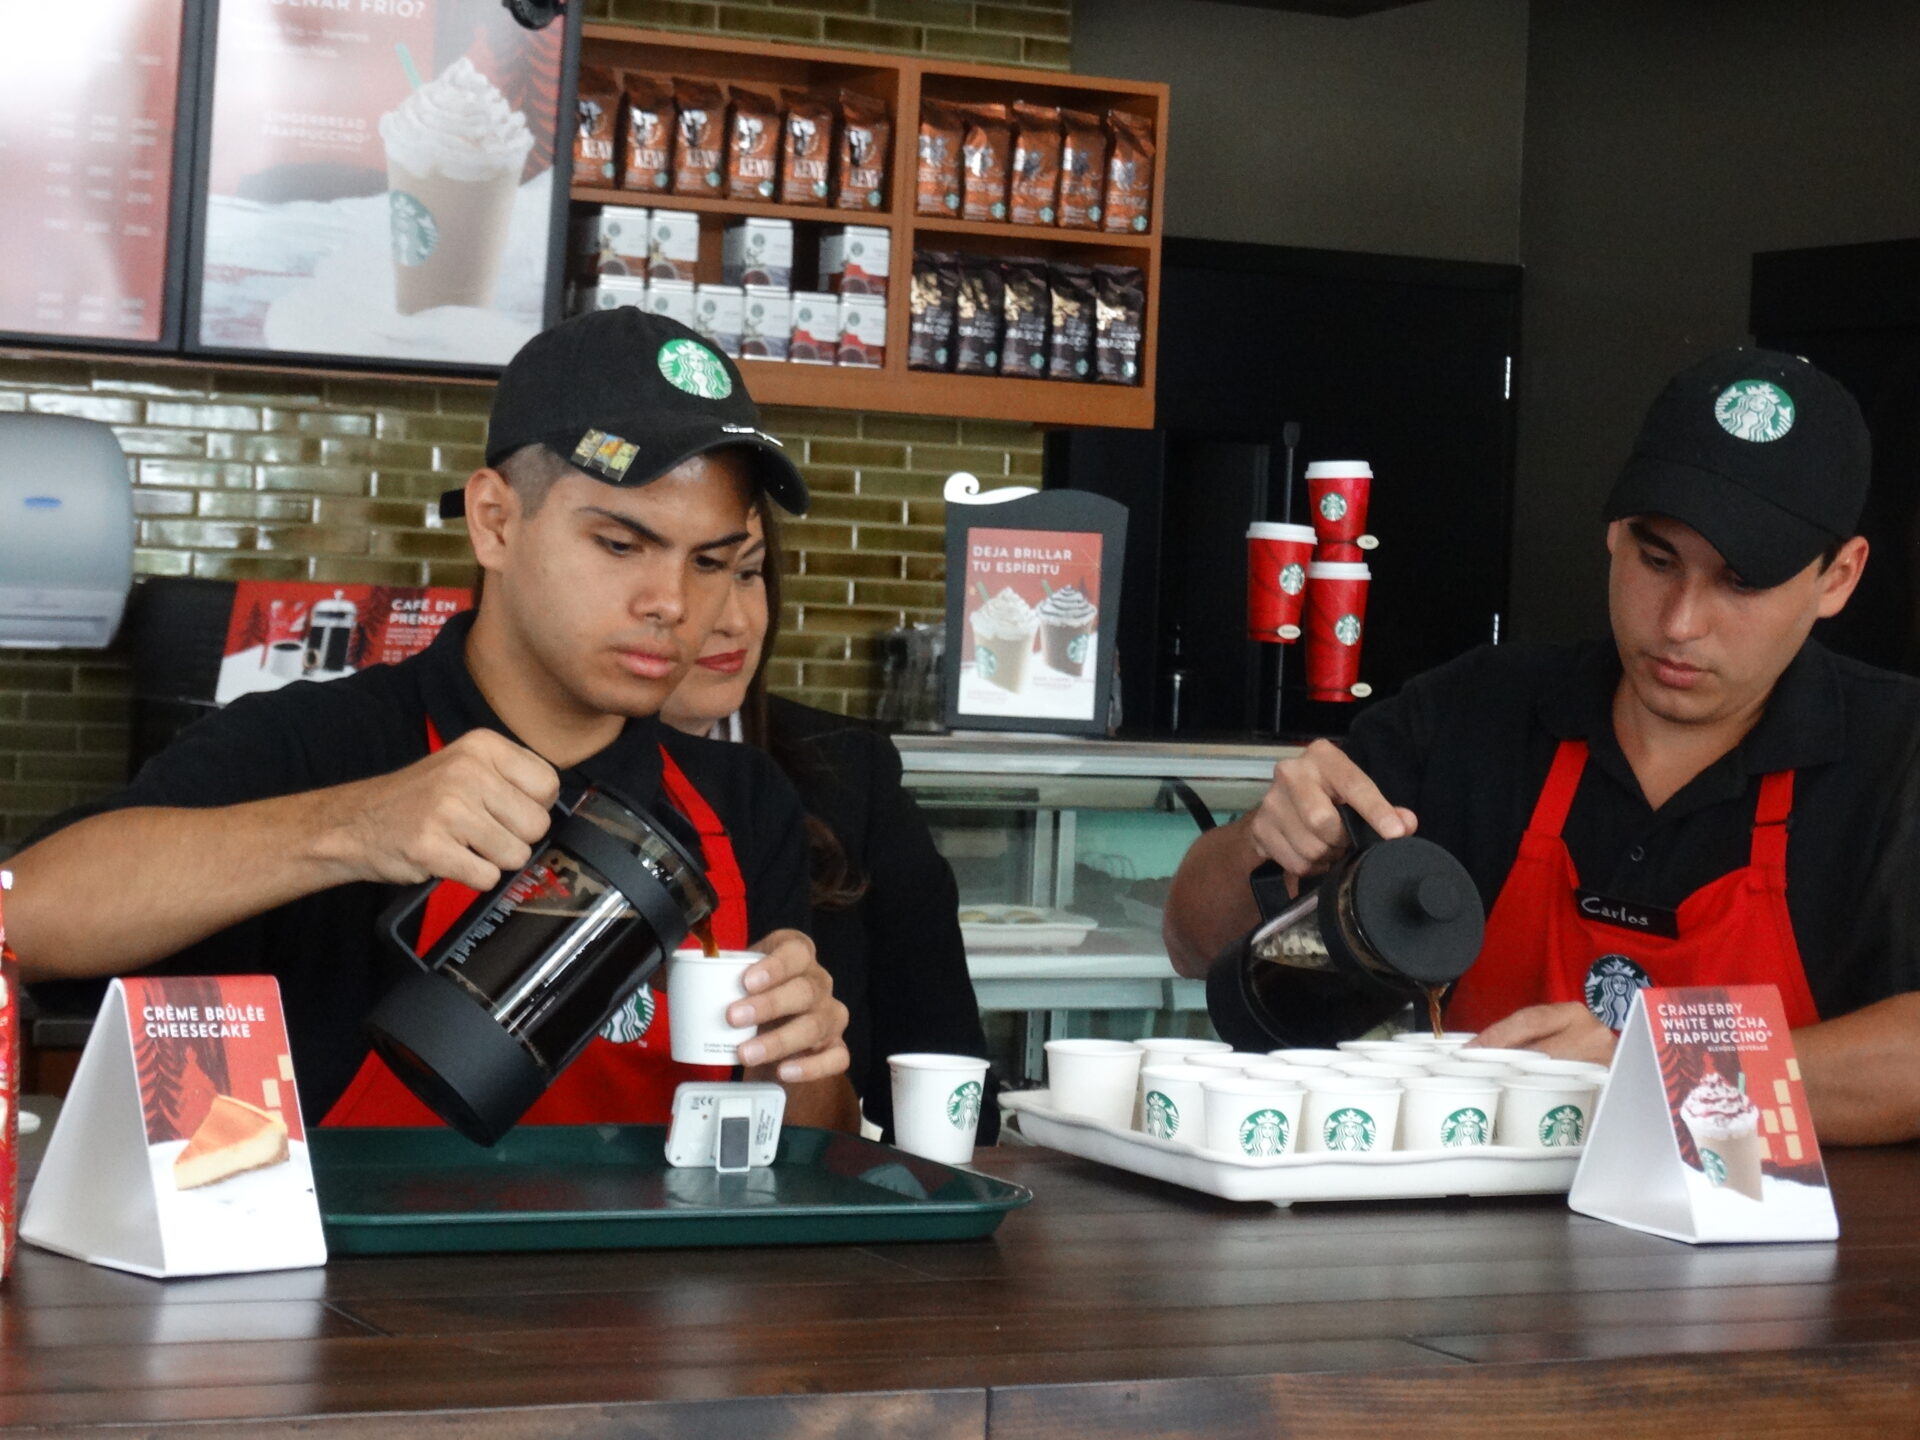 Starbucks continua expandiéndose en Costa Rica